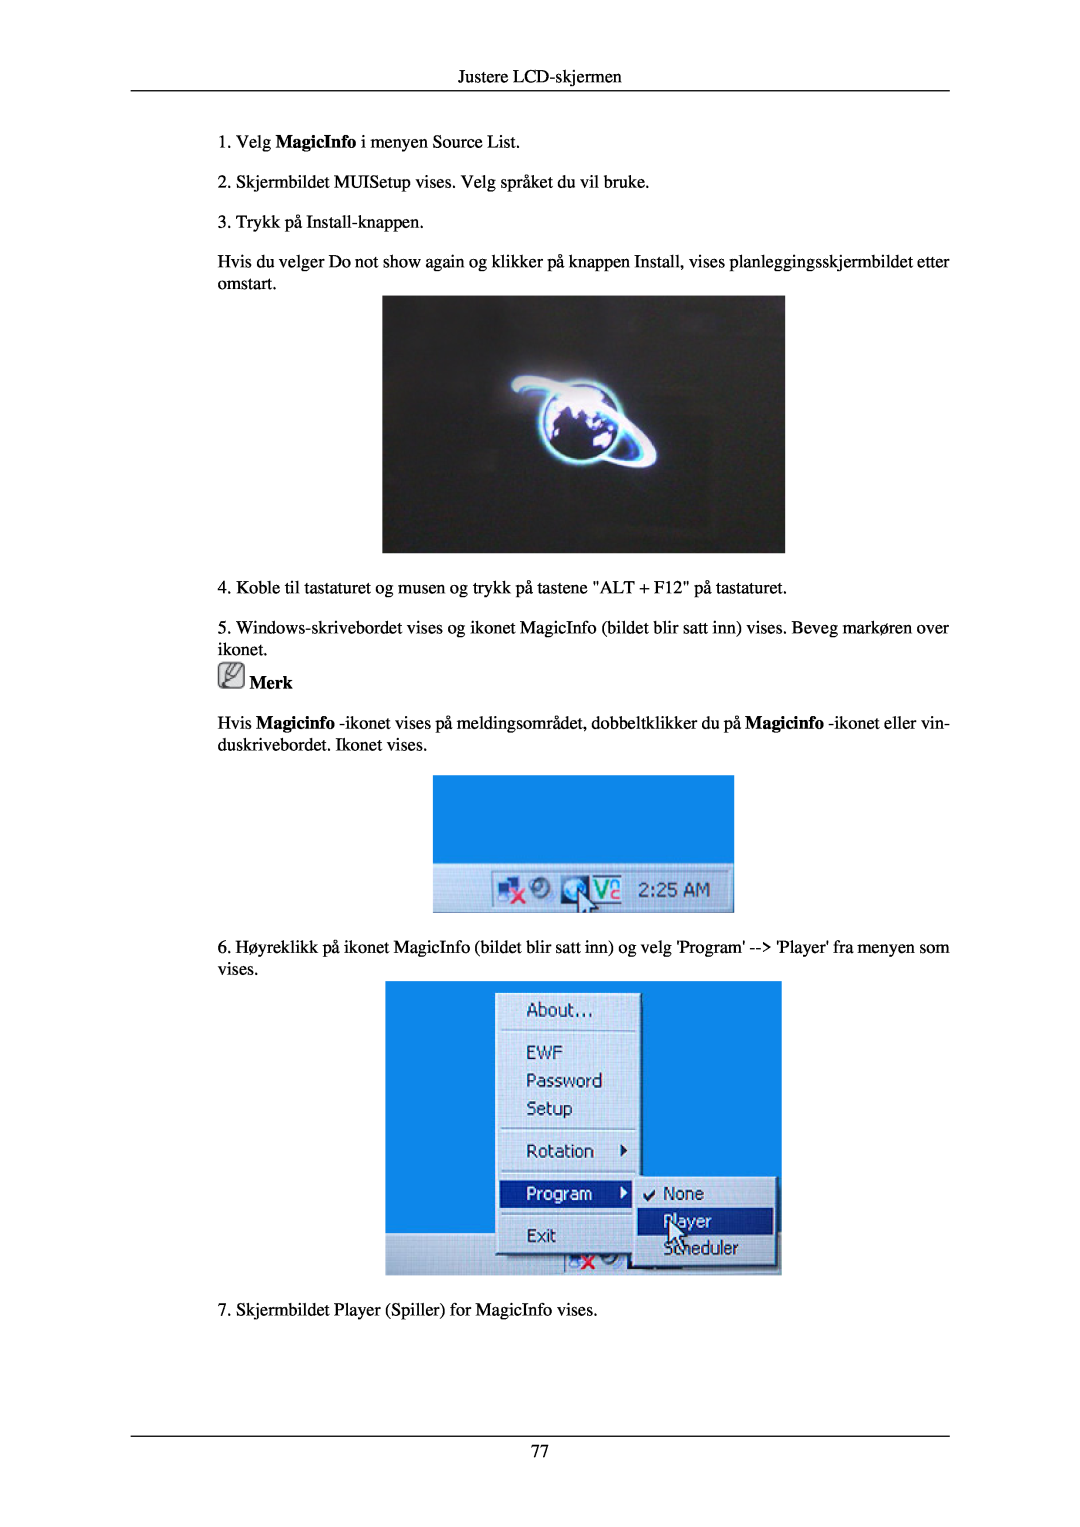 Samsung LH40TCQMBG/EN, LH40TCUMBG/EN, LH46TCUMBC/EN manual Justere LCD-skjermen 1. Velg MagicInfo i menyen Source List, Merk 